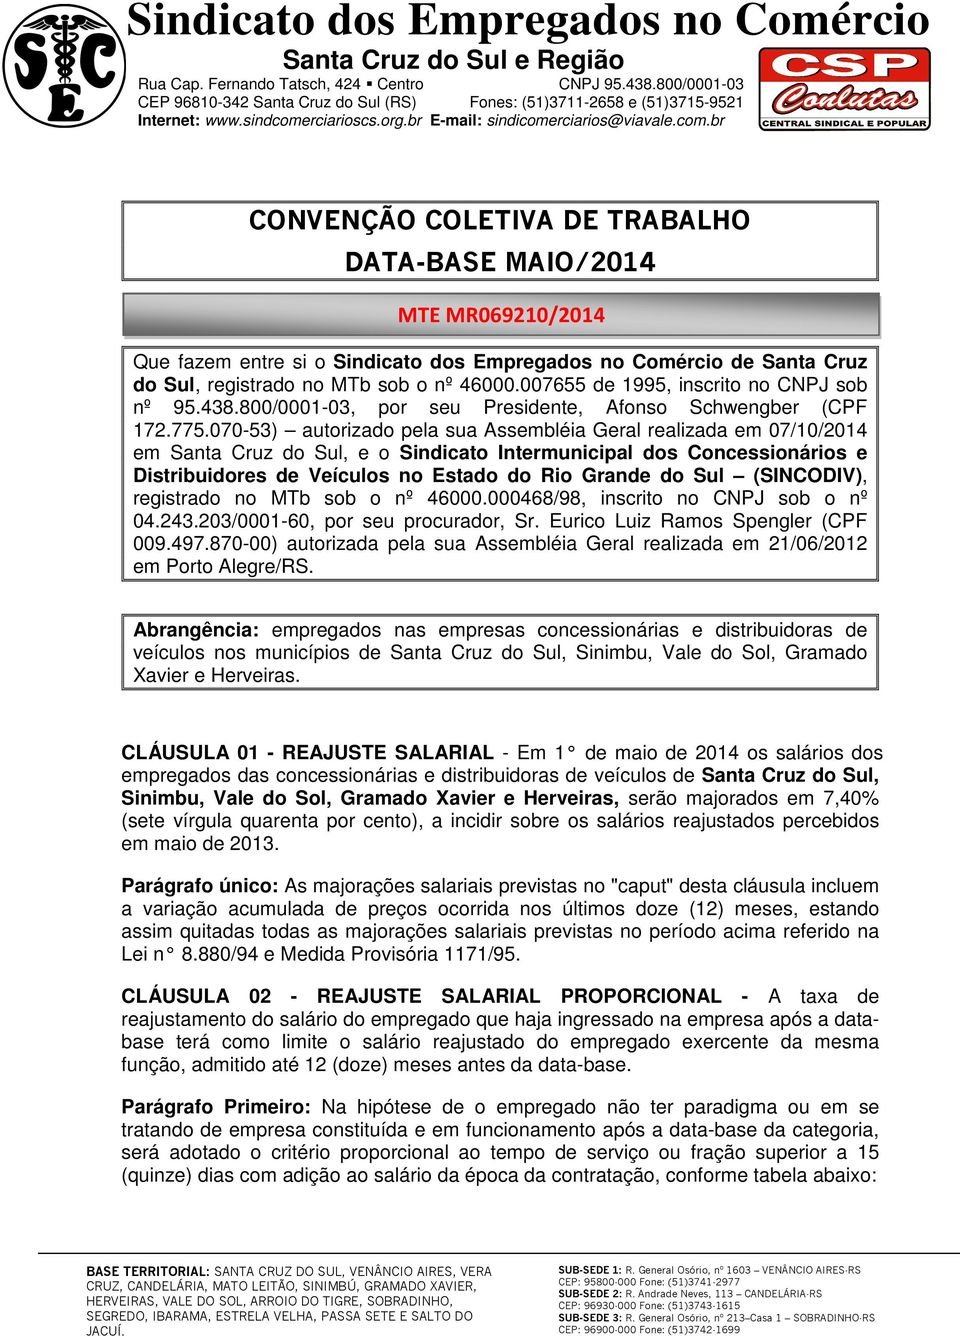 070-53) autorizado pela sua Assembléia Geral realizada em 07/10/2014 em Santa Cruz do Sul, e o Sindicato Intermunicipal dos Concessionários e Distribuidores de Veículos no Estado do Rio Grande do Sul